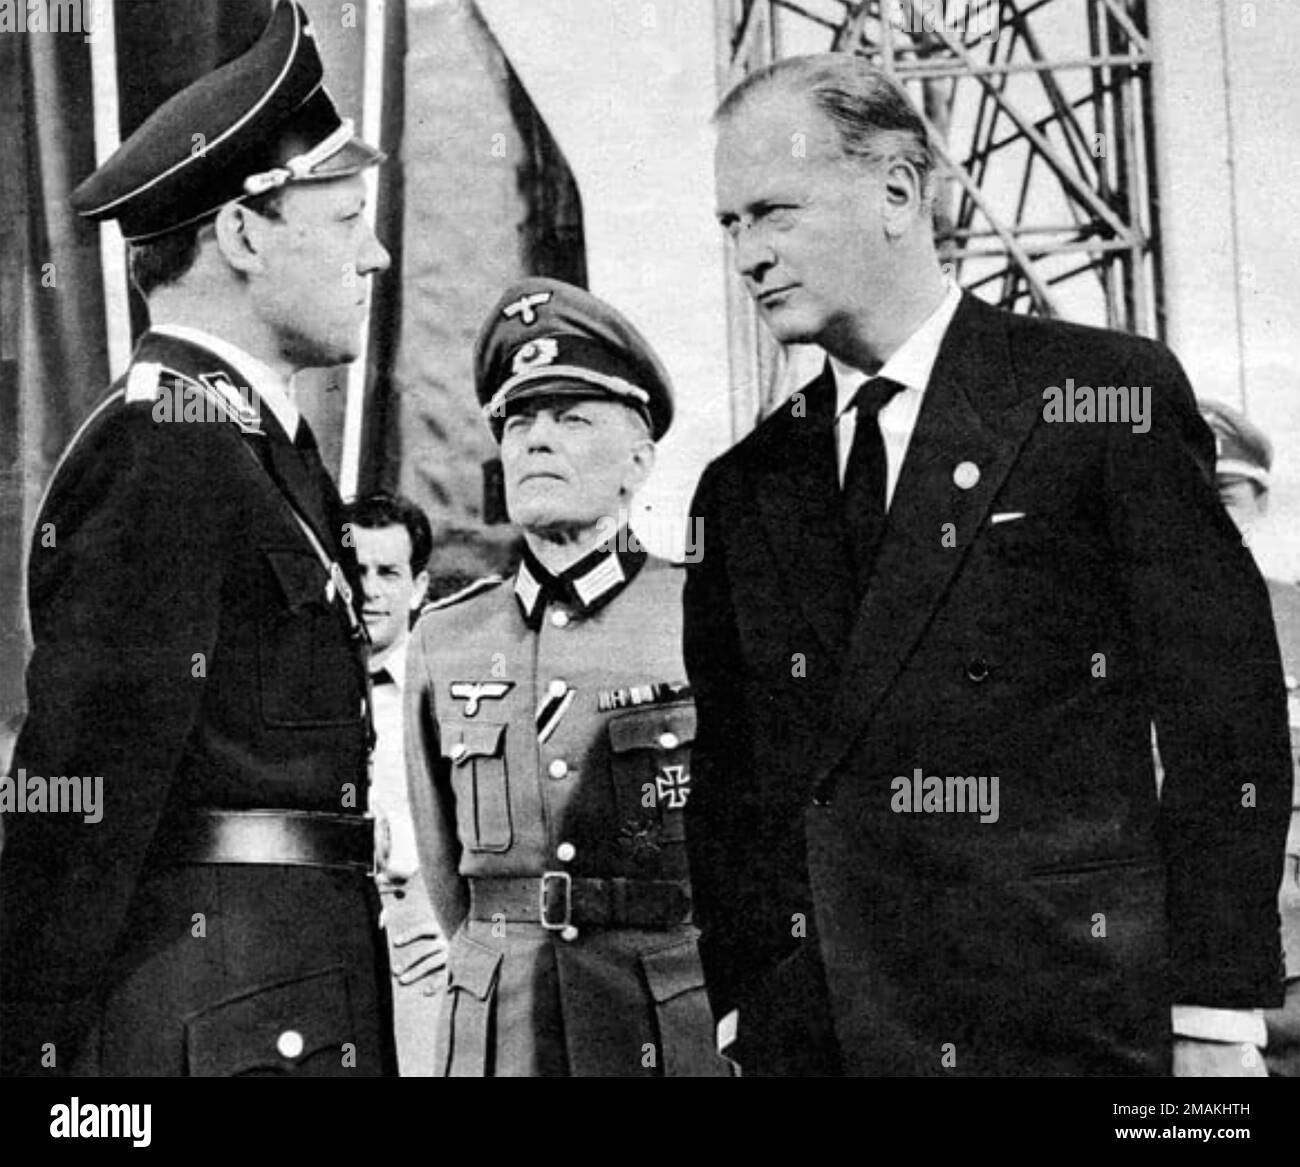 Je SUIS À L'ÉTOILE 1960 Columbia Pictures film avec Curt Jurgens à droite comme Wernher von Braun. Banque D'Images